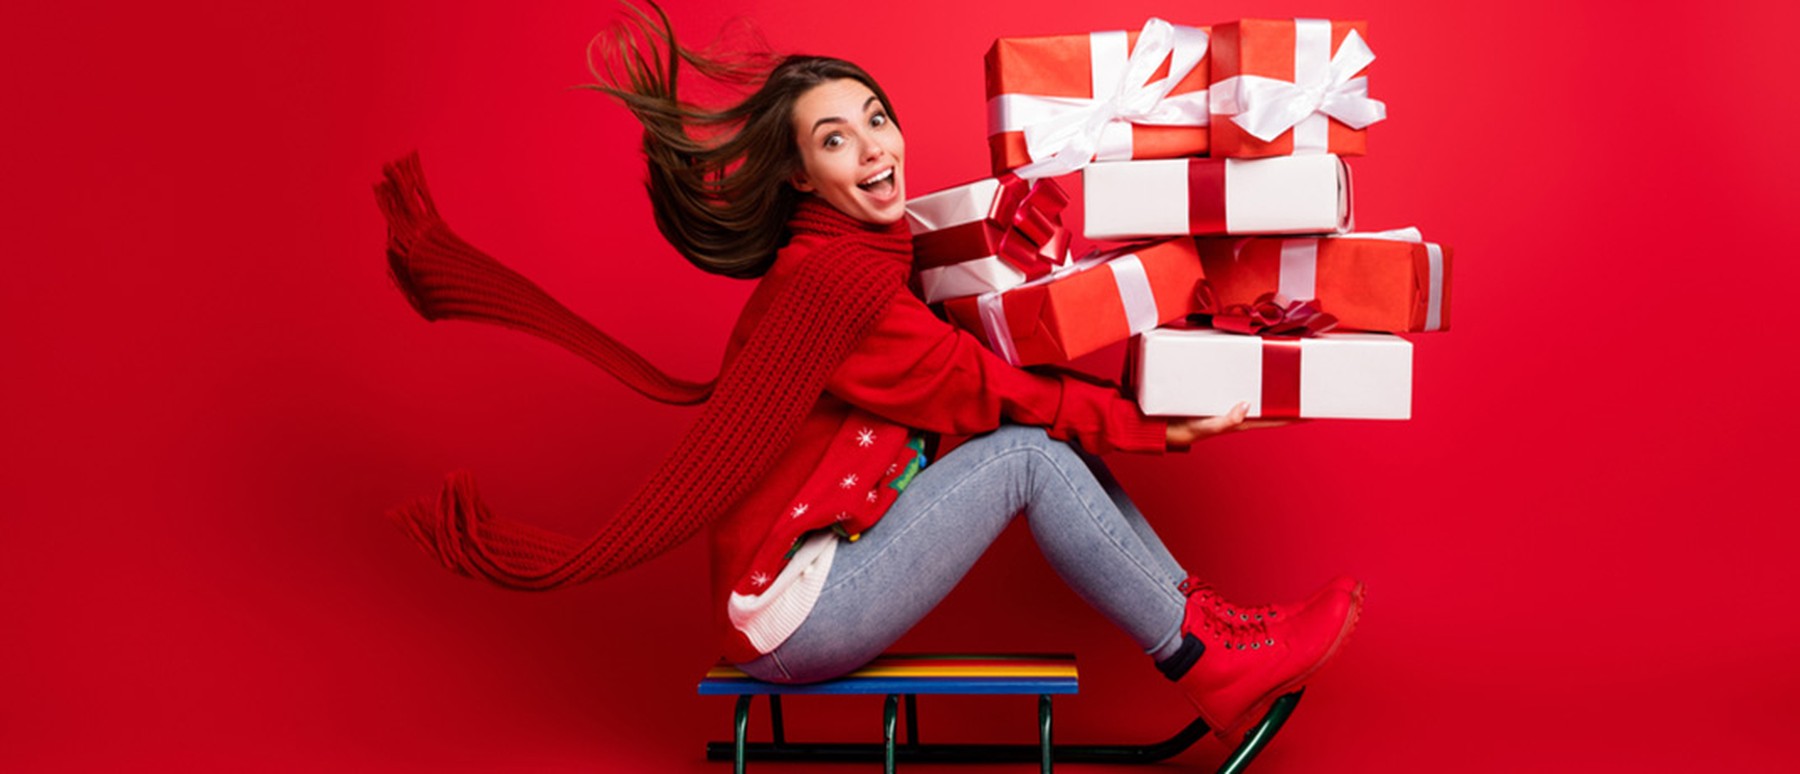 De ultieme gift guide met tips voor goedkope last minute kerstcadeaus 